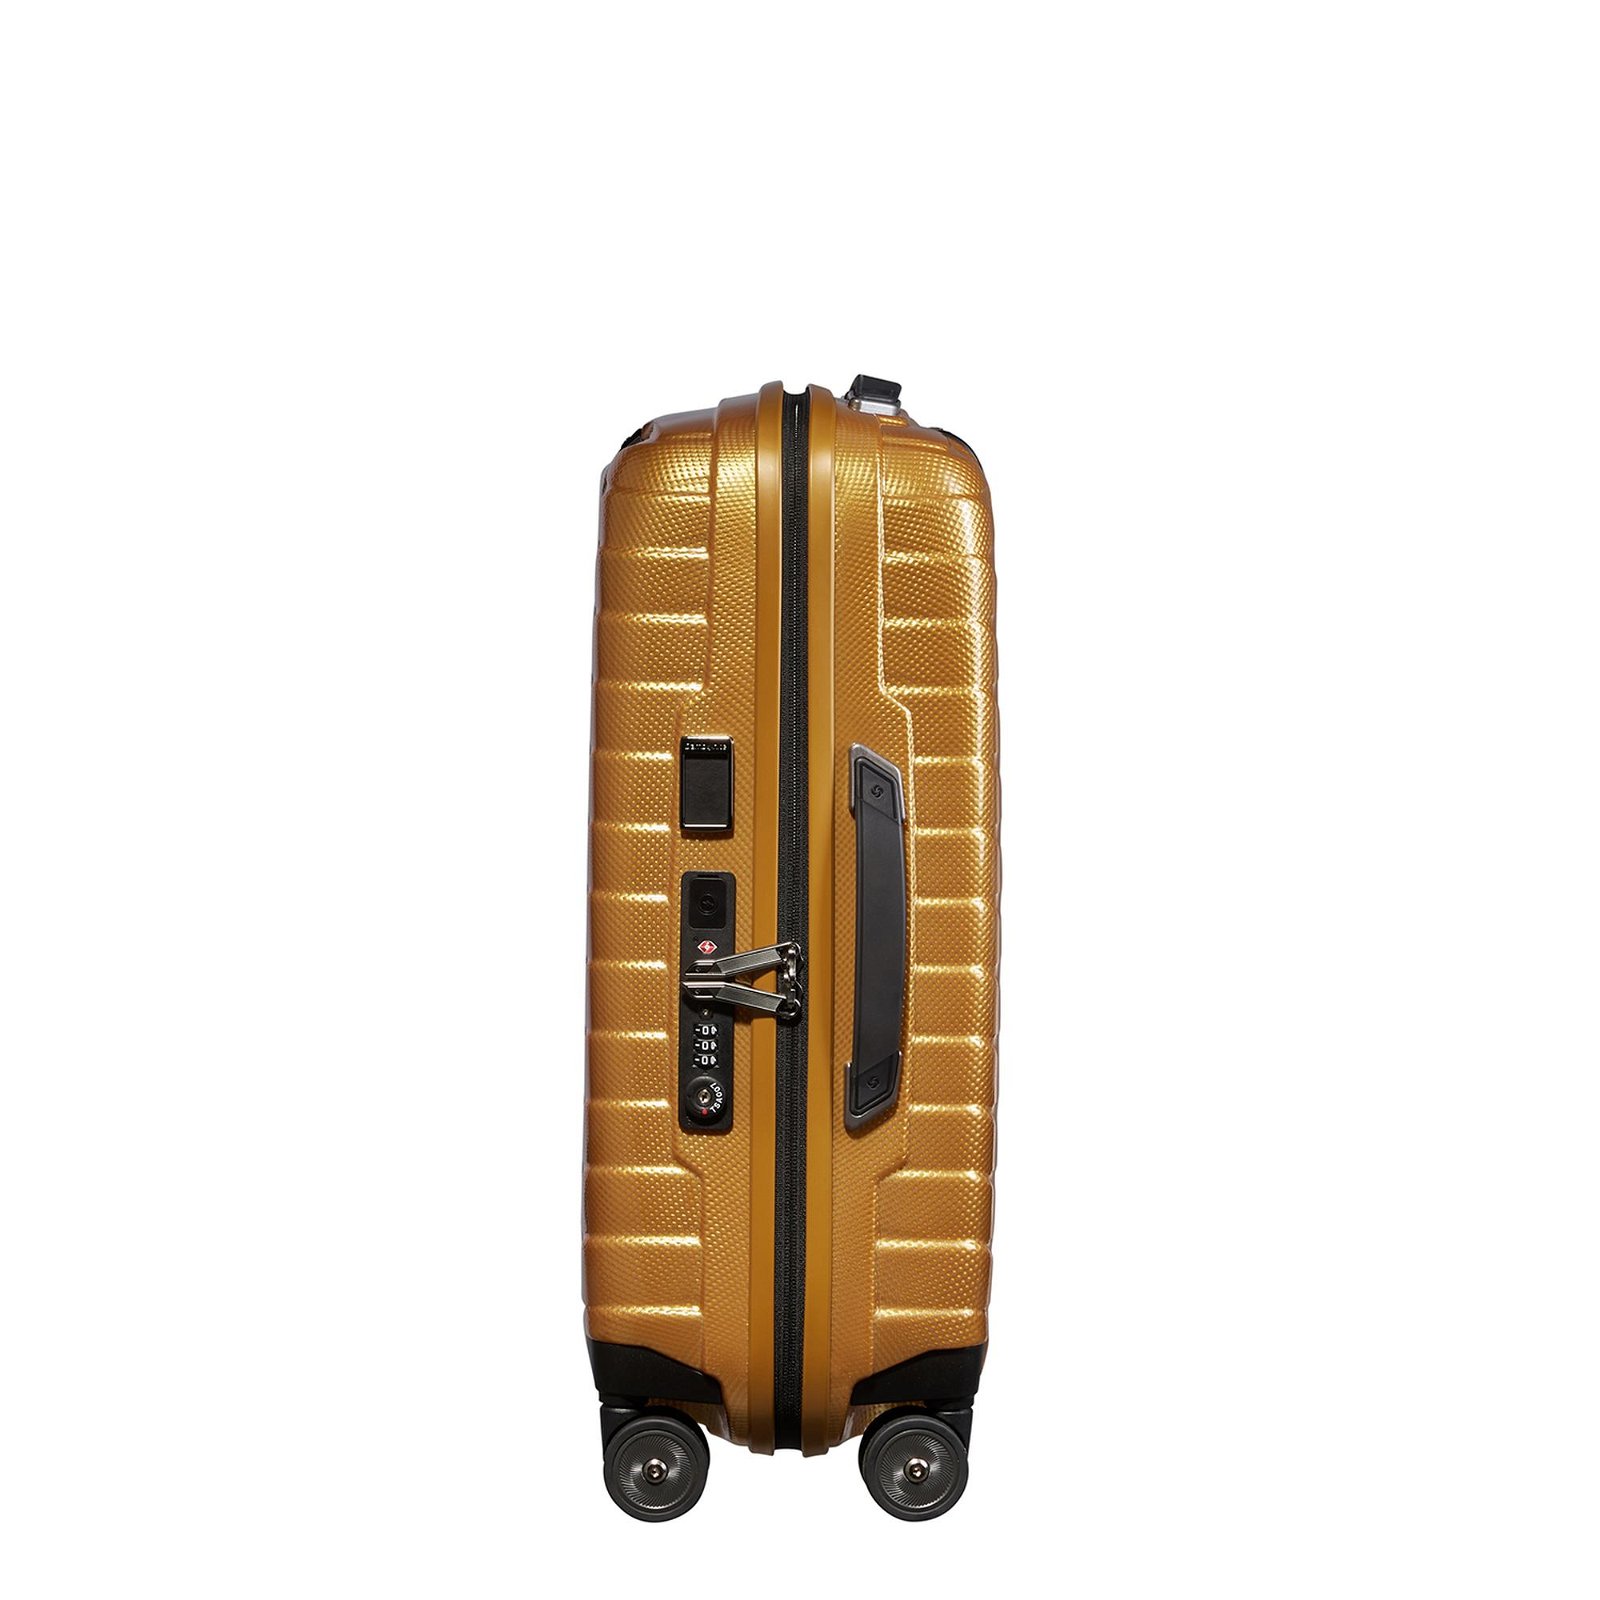 Samsonite Proxis - Spinner Sarı 4 Tekerlekli Körüklü Kabin Boy Valiz 55 cm